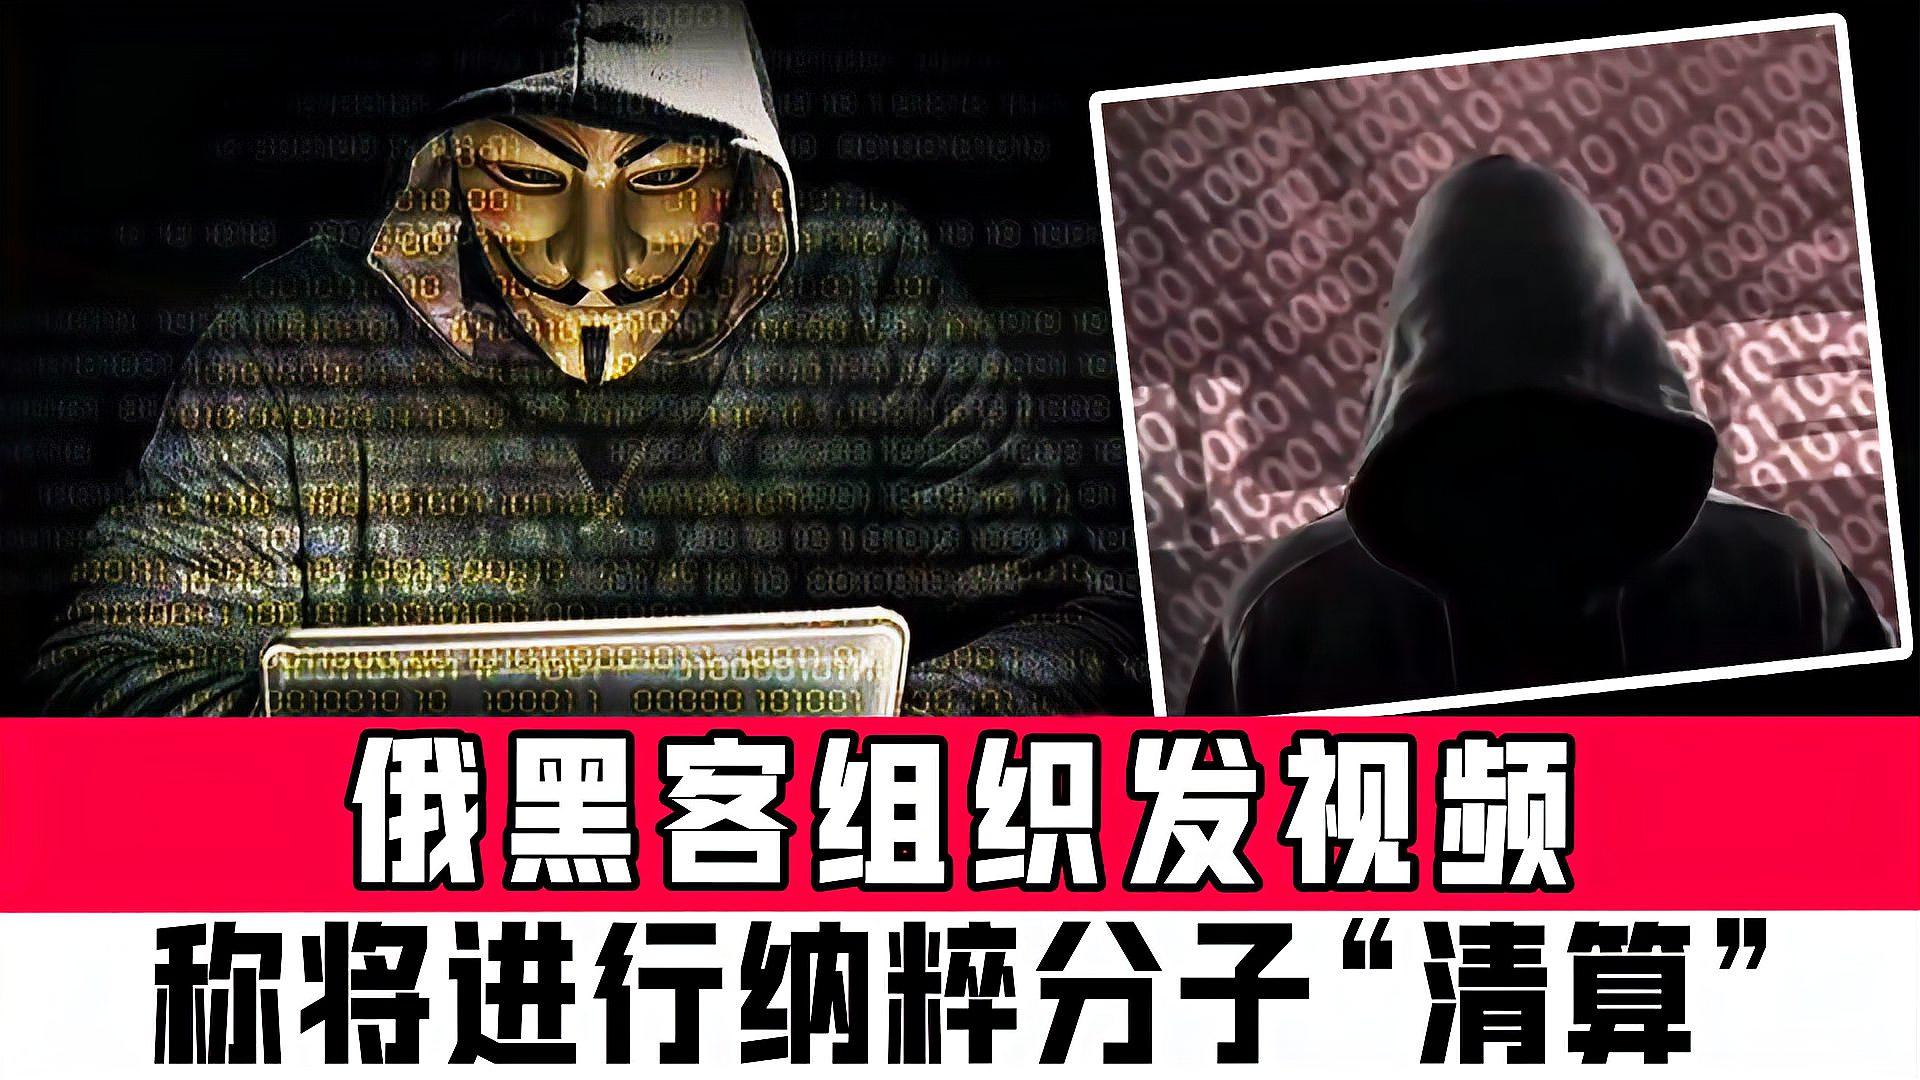 最大黑客组织对俄宣战(世界最大黑客组织anonymous)